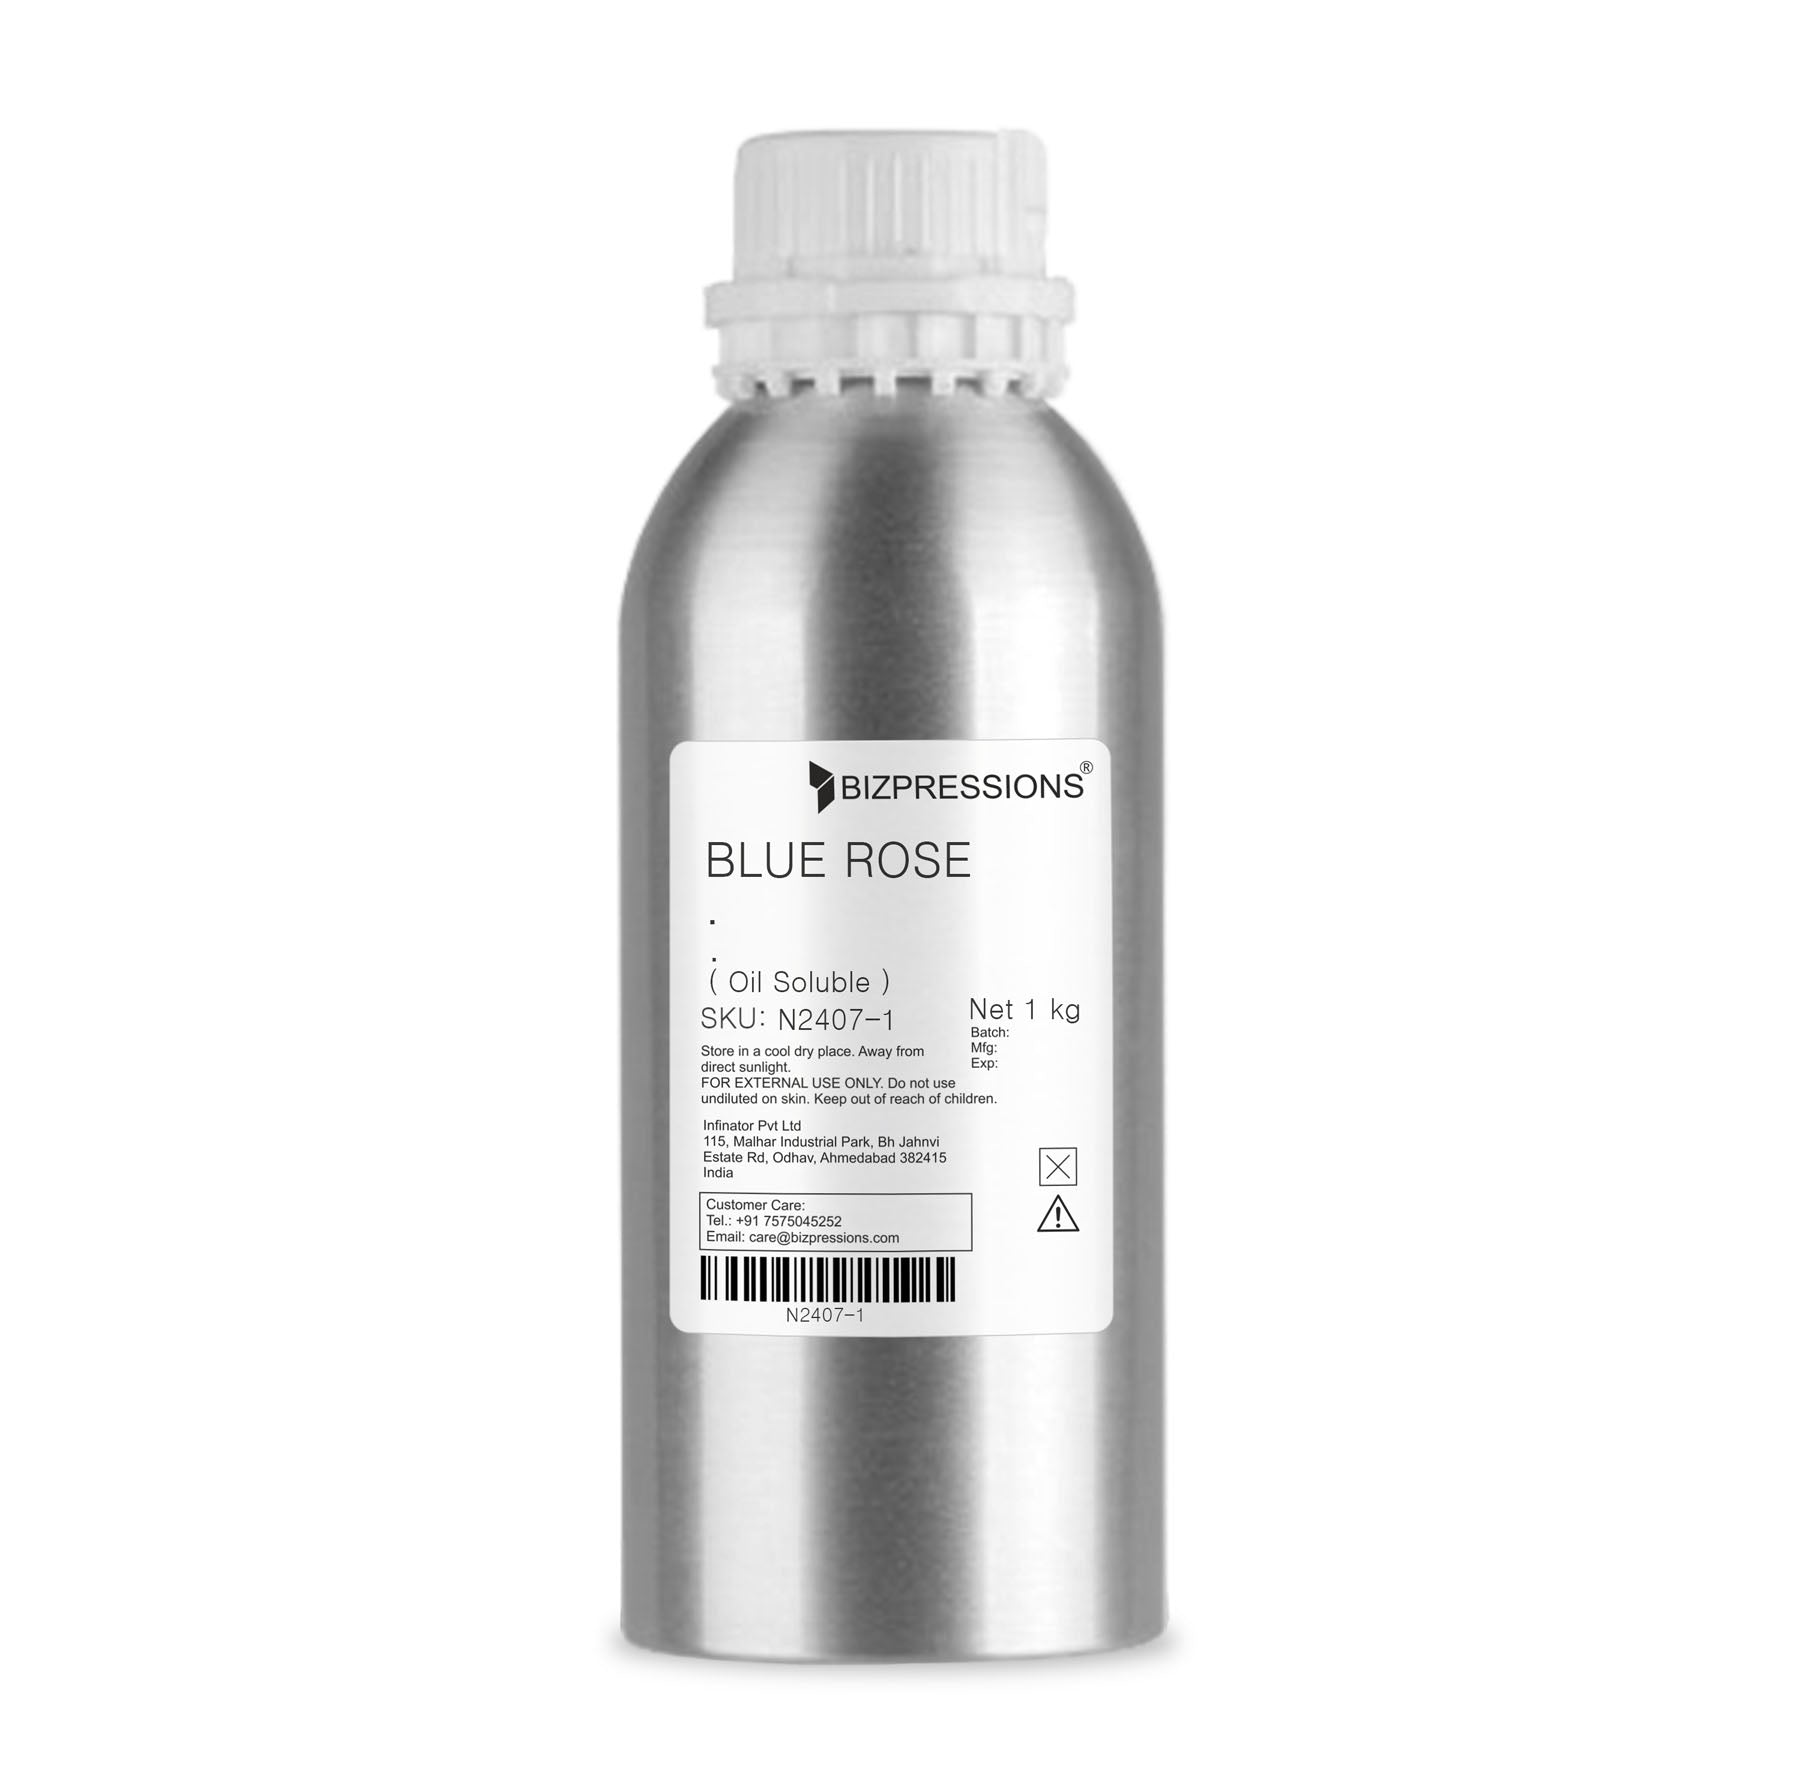 BLUE ROSE - Fragrance ( Oil Soluble ) - 1 kg